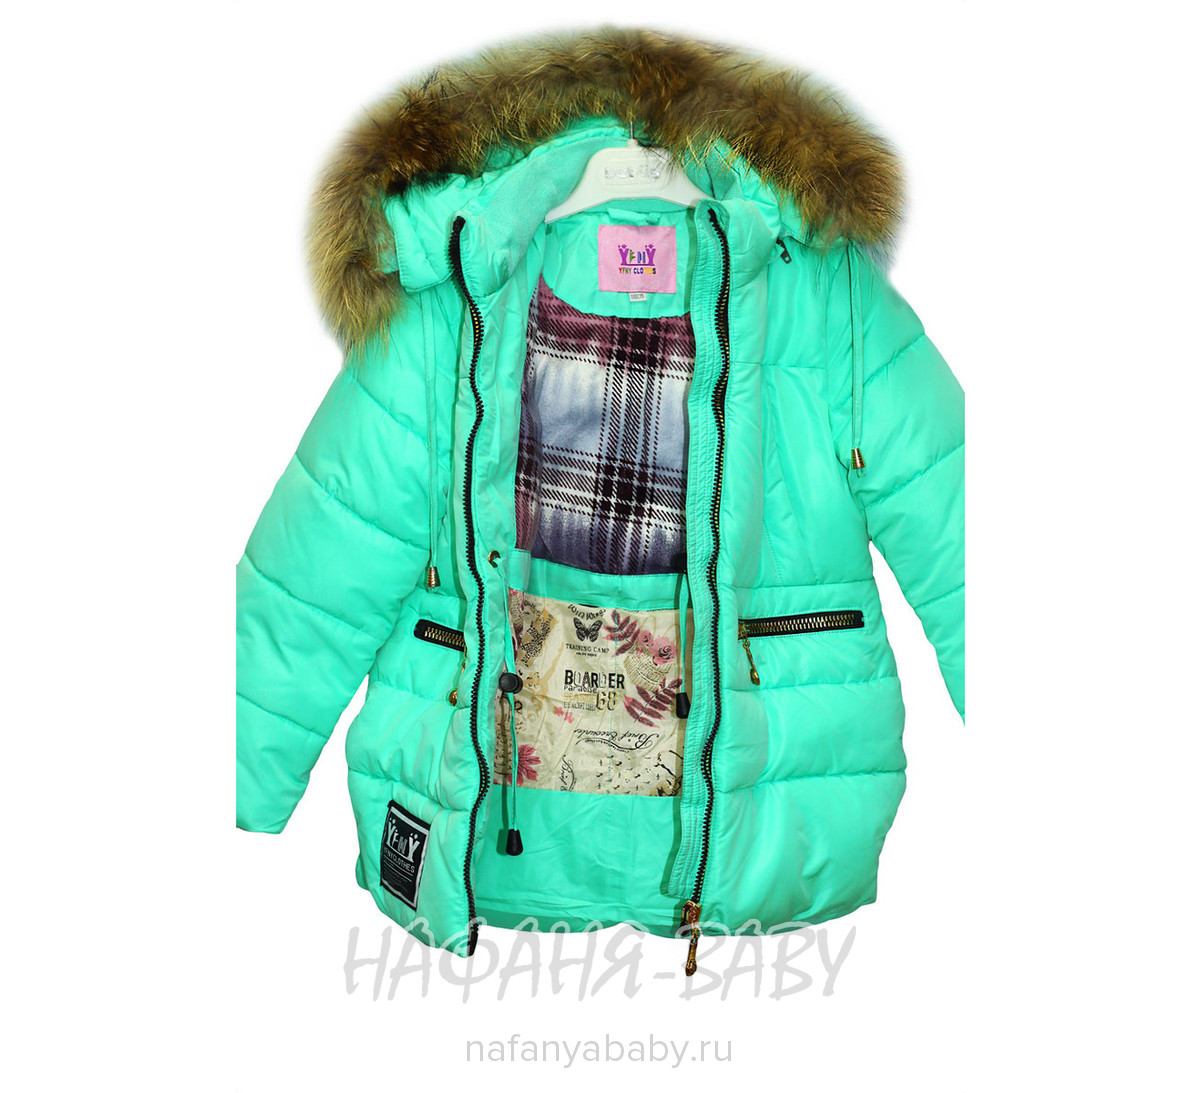 Детская зимняя куртка для девочки YFNY арт: 3178, 5-9 лет, 1-4 года, цвет бирюзовый, оптом Китай (Пекин)